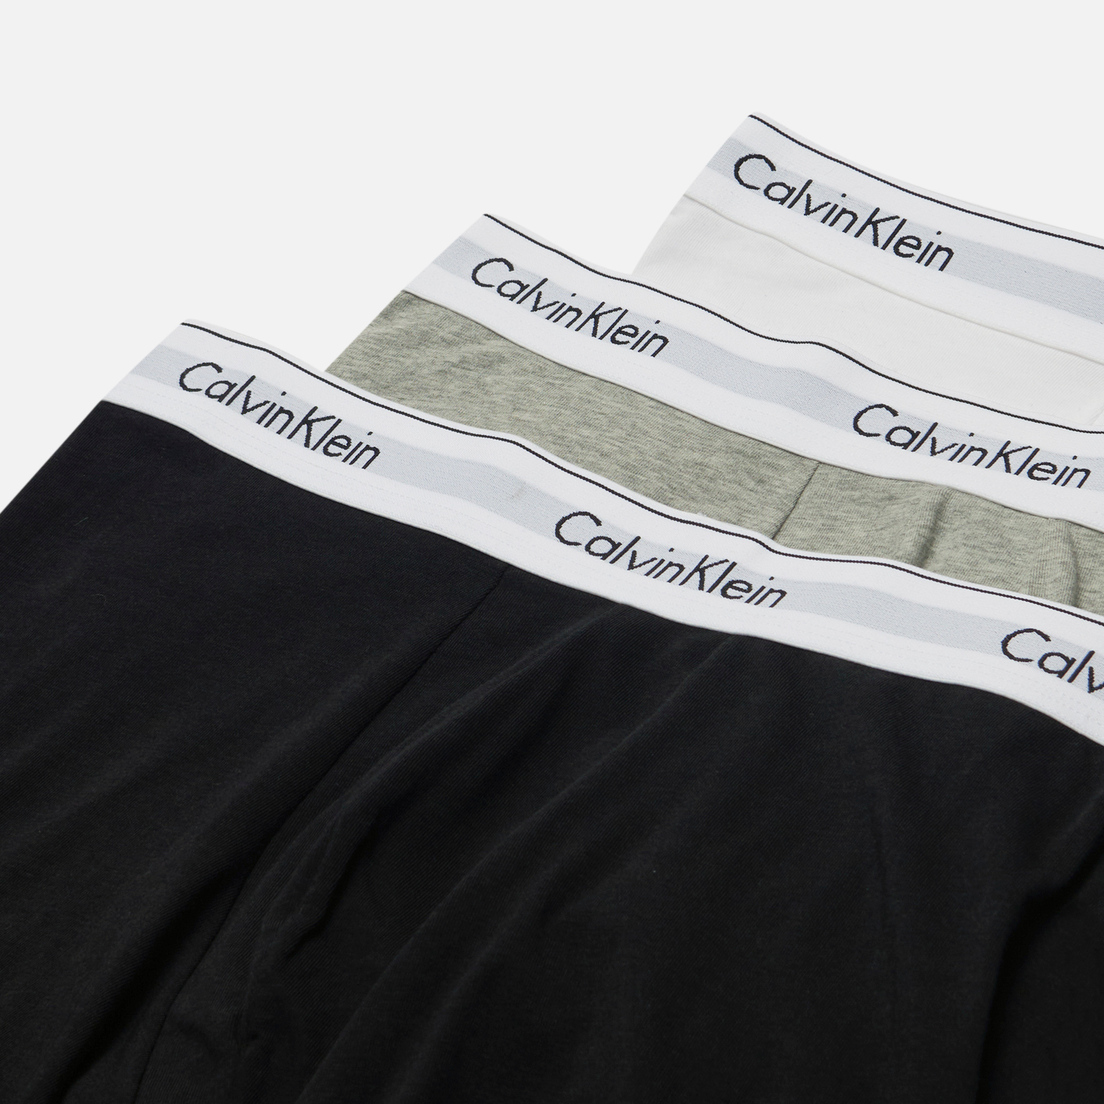 Calvin Klein Underwear Комплект мужских трусов 3-Pack Boxer Brief Modern Cotton